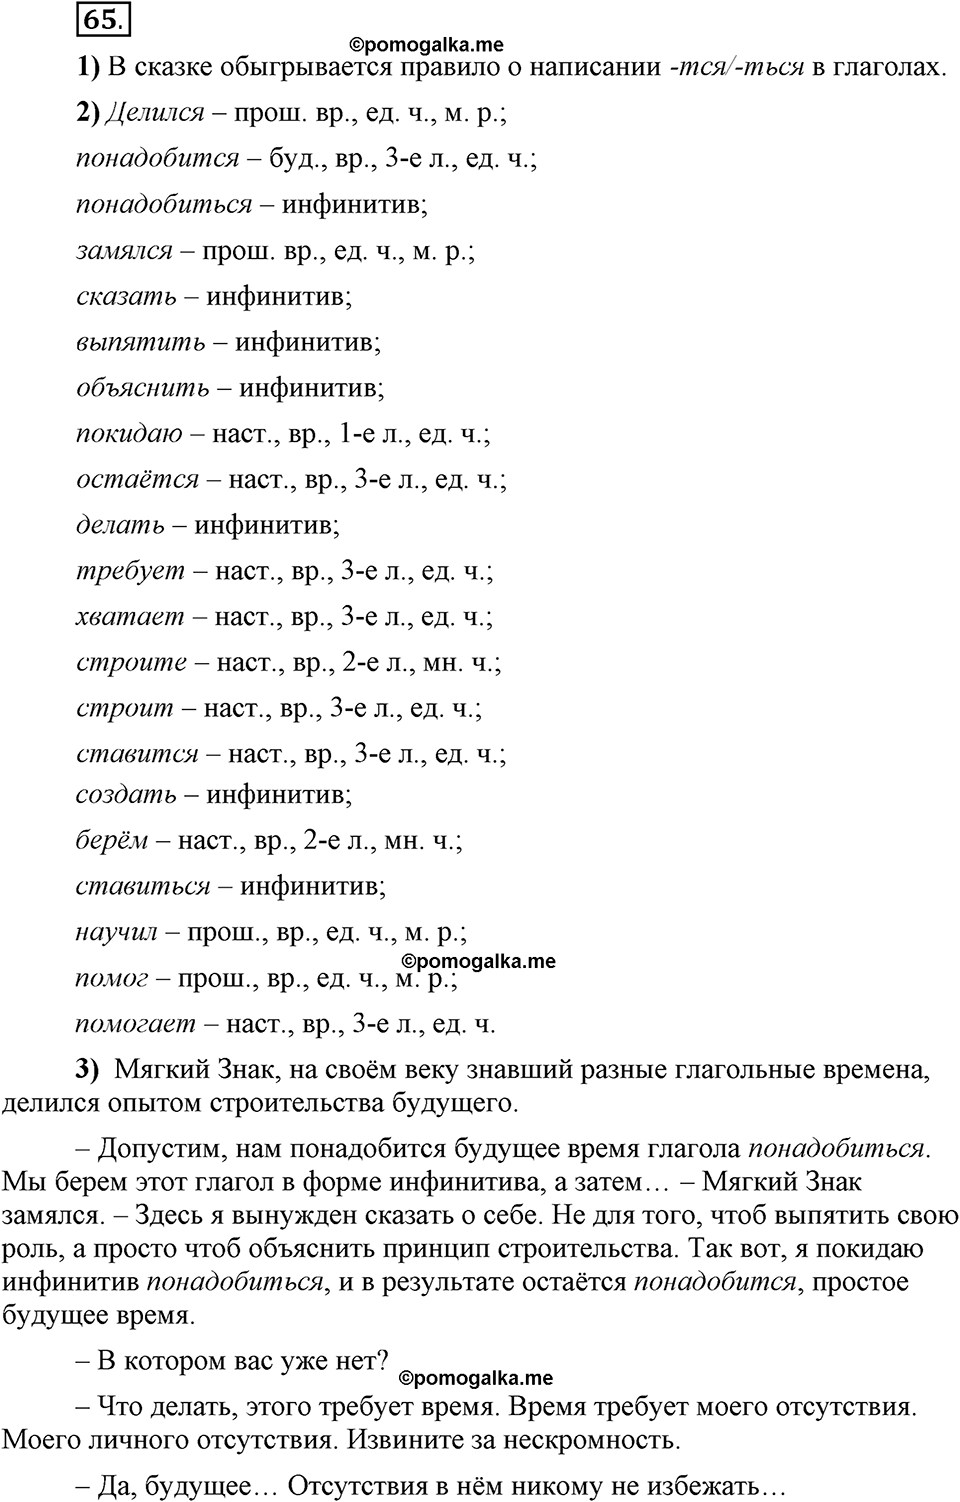 Глава 1. Упражнение №65 русский язык 6 класс Шмелёв